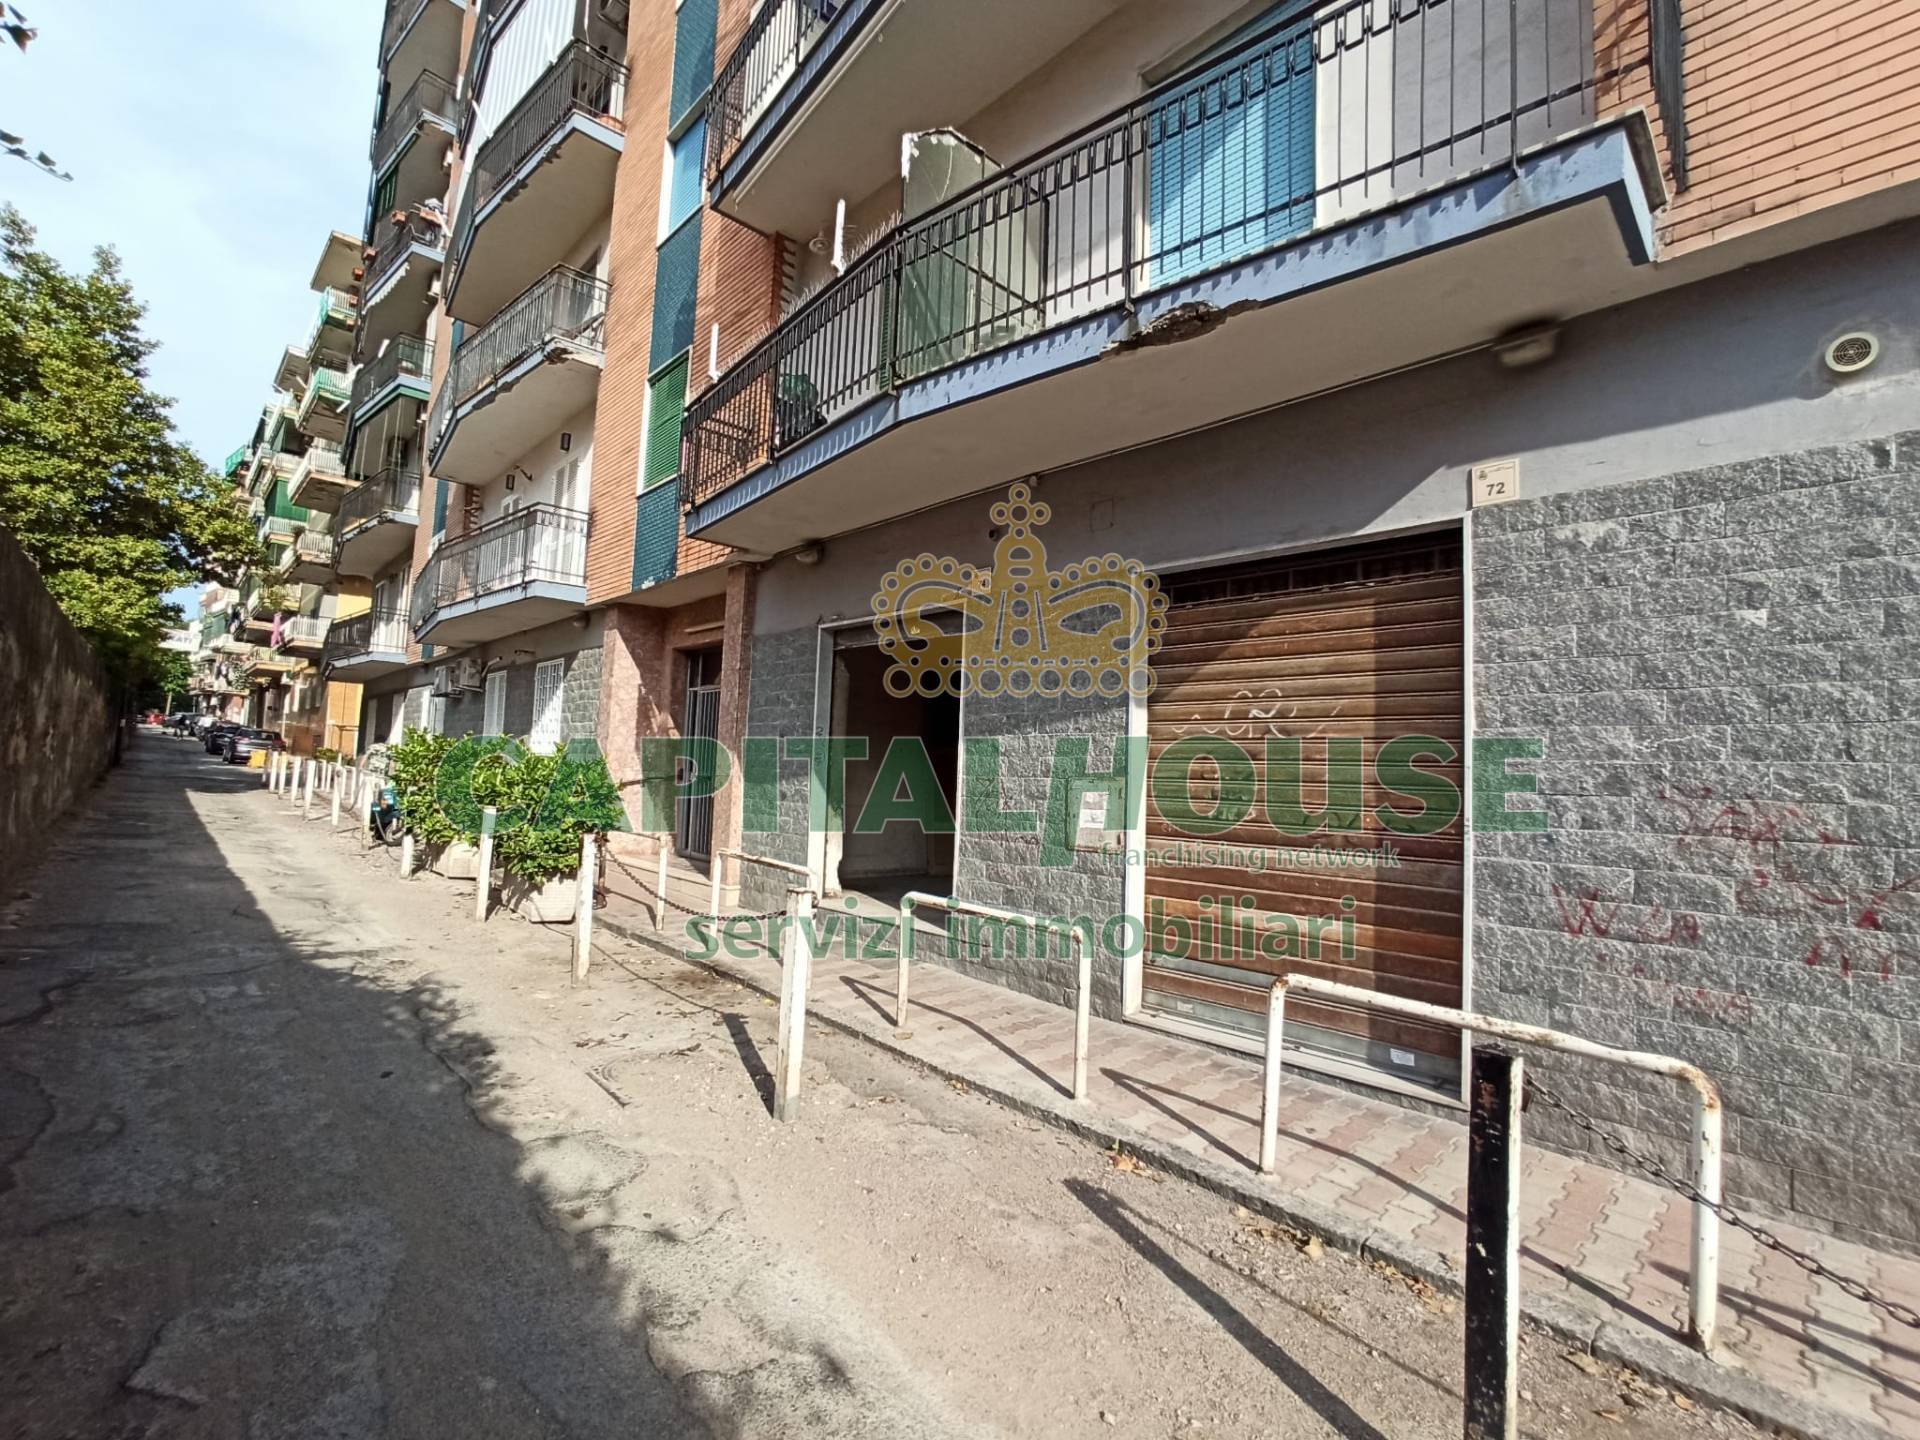 Negozio / Locale in affitto a San Giorgio a Cremano, 9999 locali, prezzo € 450 | CambioCasa.it